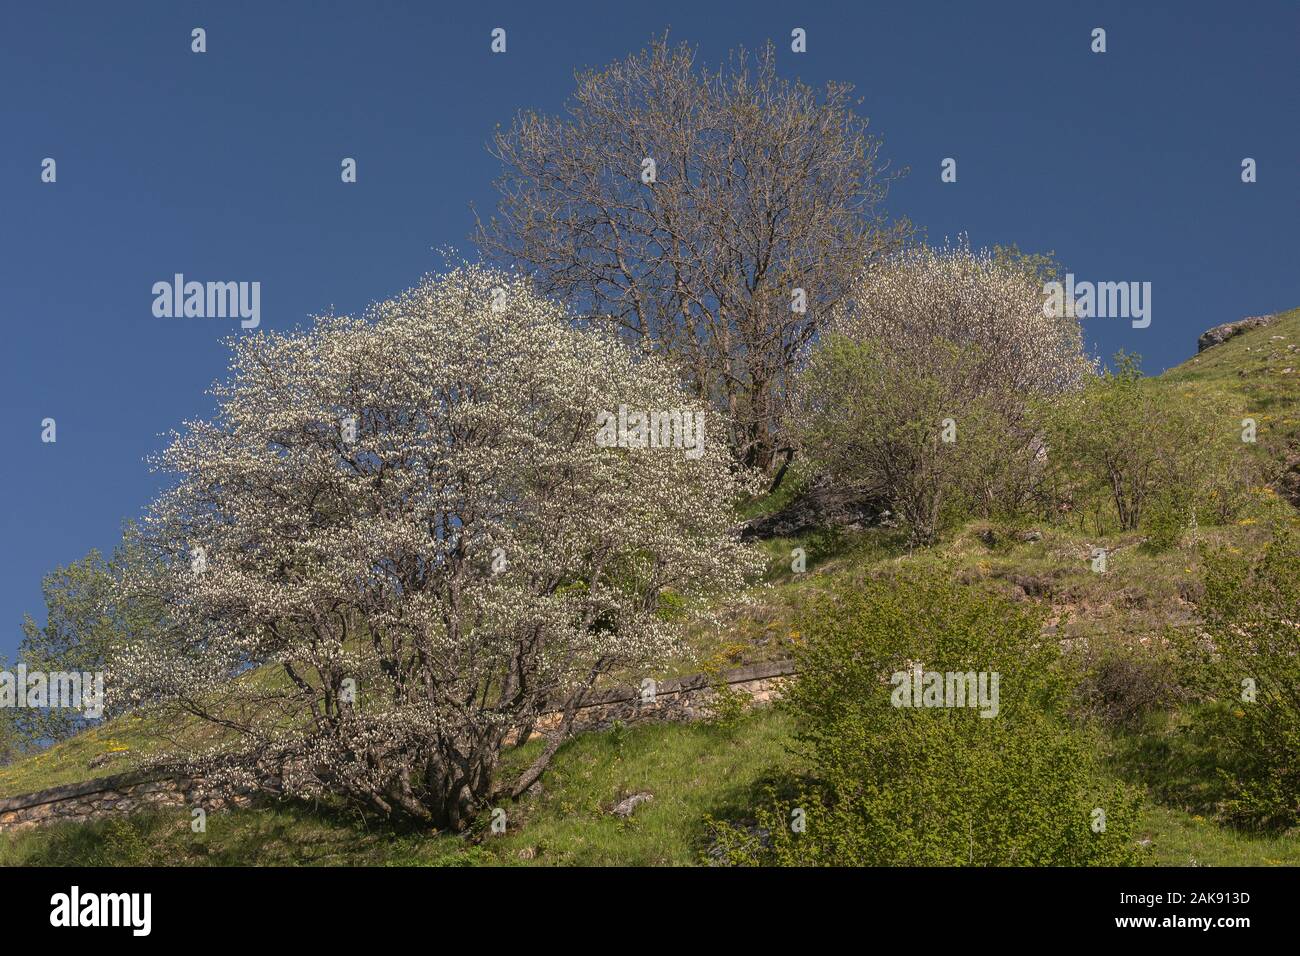 Whitebeam, Sorbus aria, qui vient d'entrer dans la feuille, montre des côtés blancs des feuilles. Ressort. Alpes maritimes. Banque D'Images